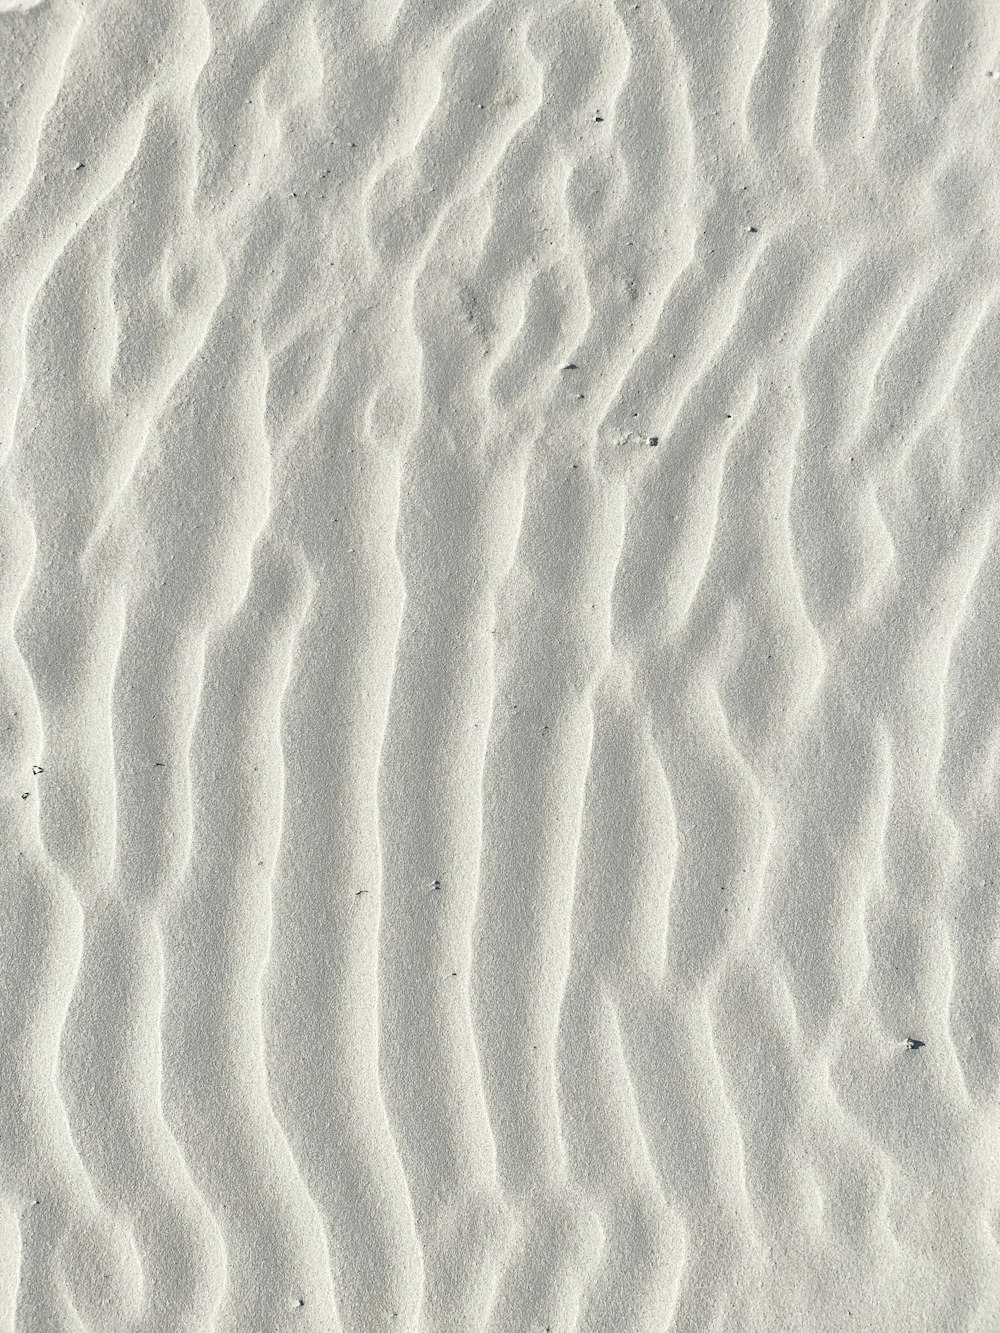 Fotografía macro de arena blanca